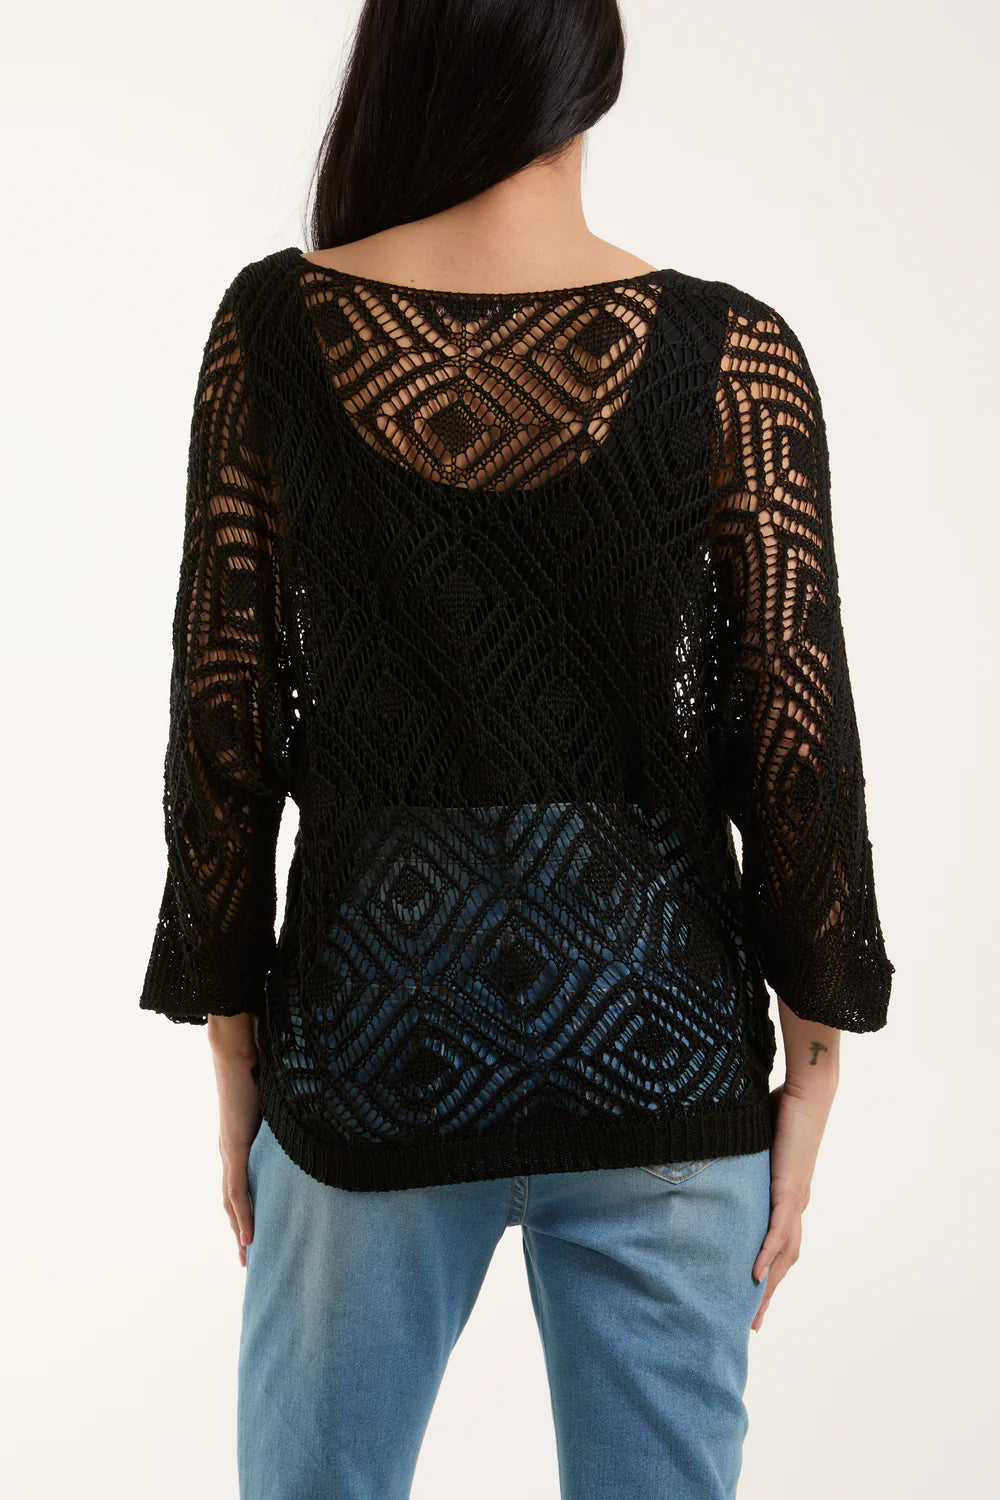 Crochet Top - Black